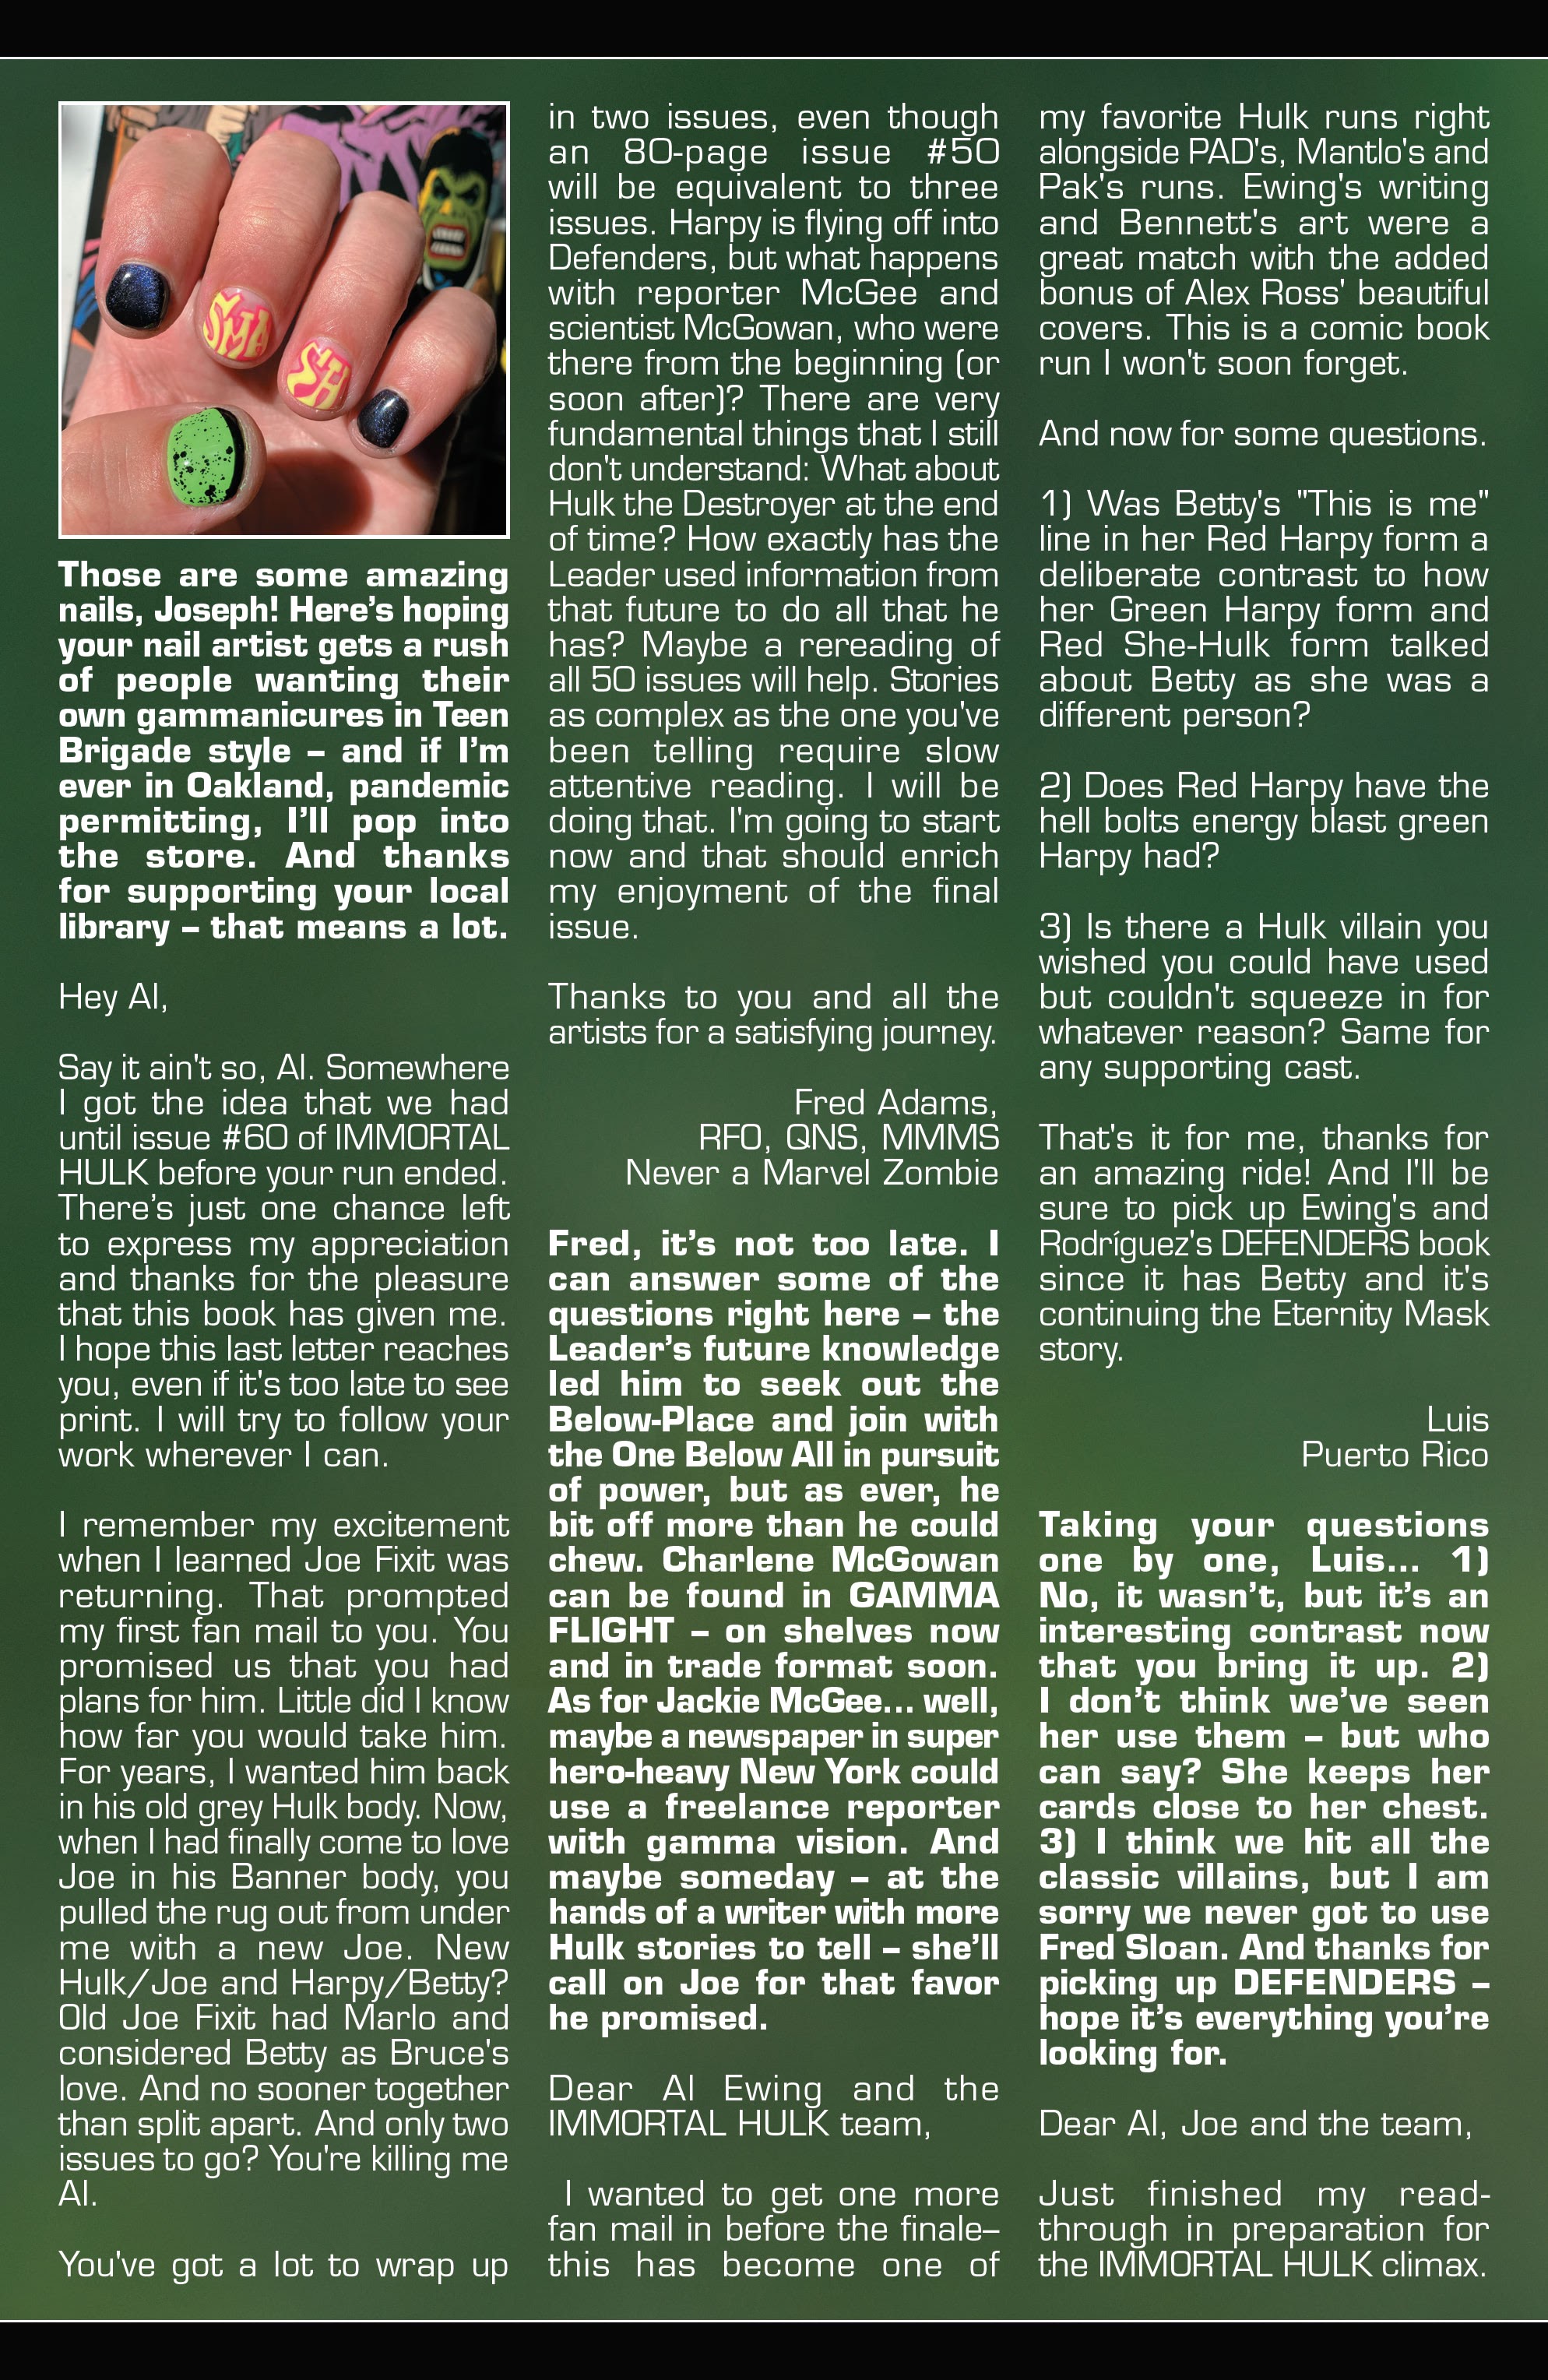 Read online Immortal Hulk comic -  Issue #50 - 79